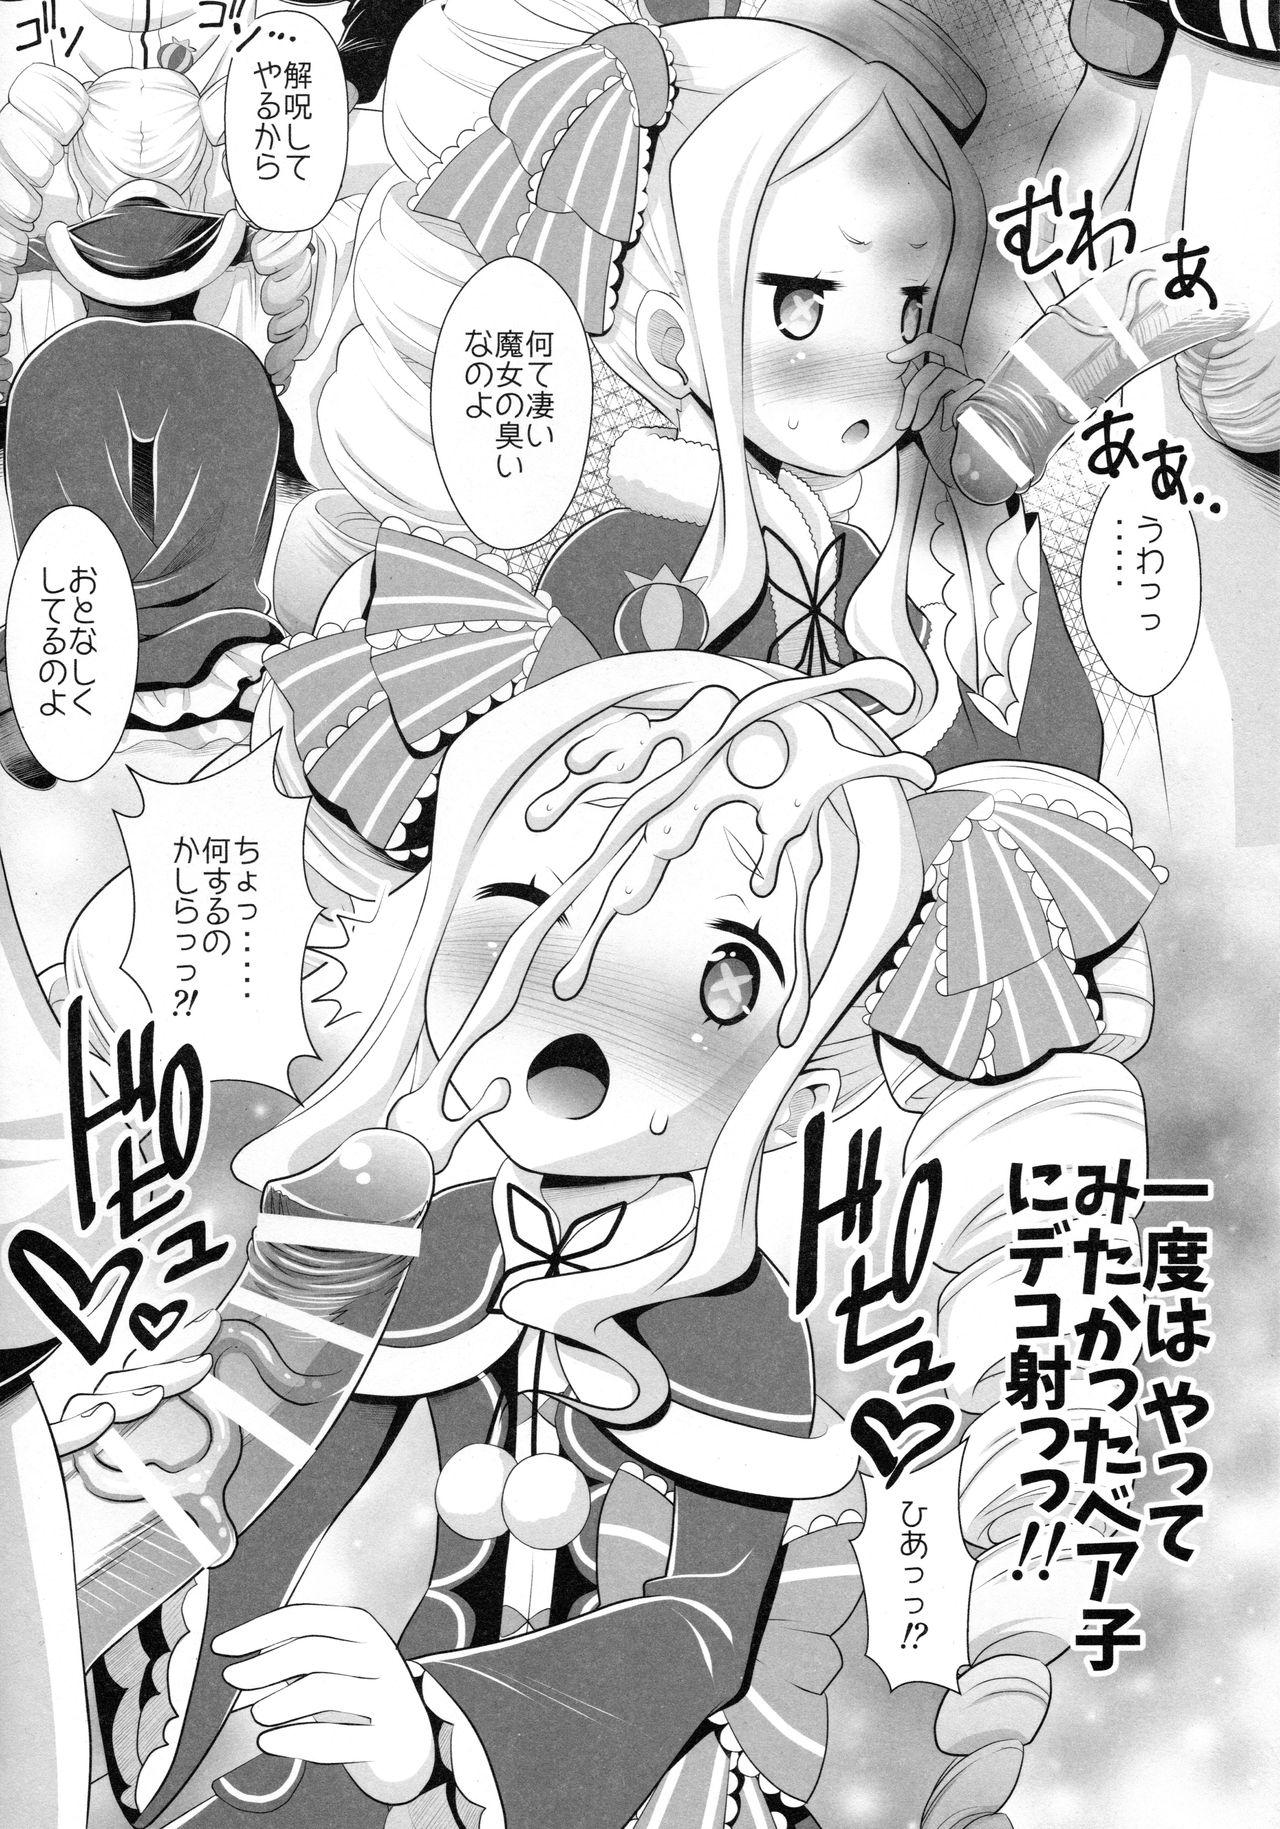 First Time Re:Zero na Maid-san - Re zero kara hajimeru isekai seikatsu Shemale - Page 9